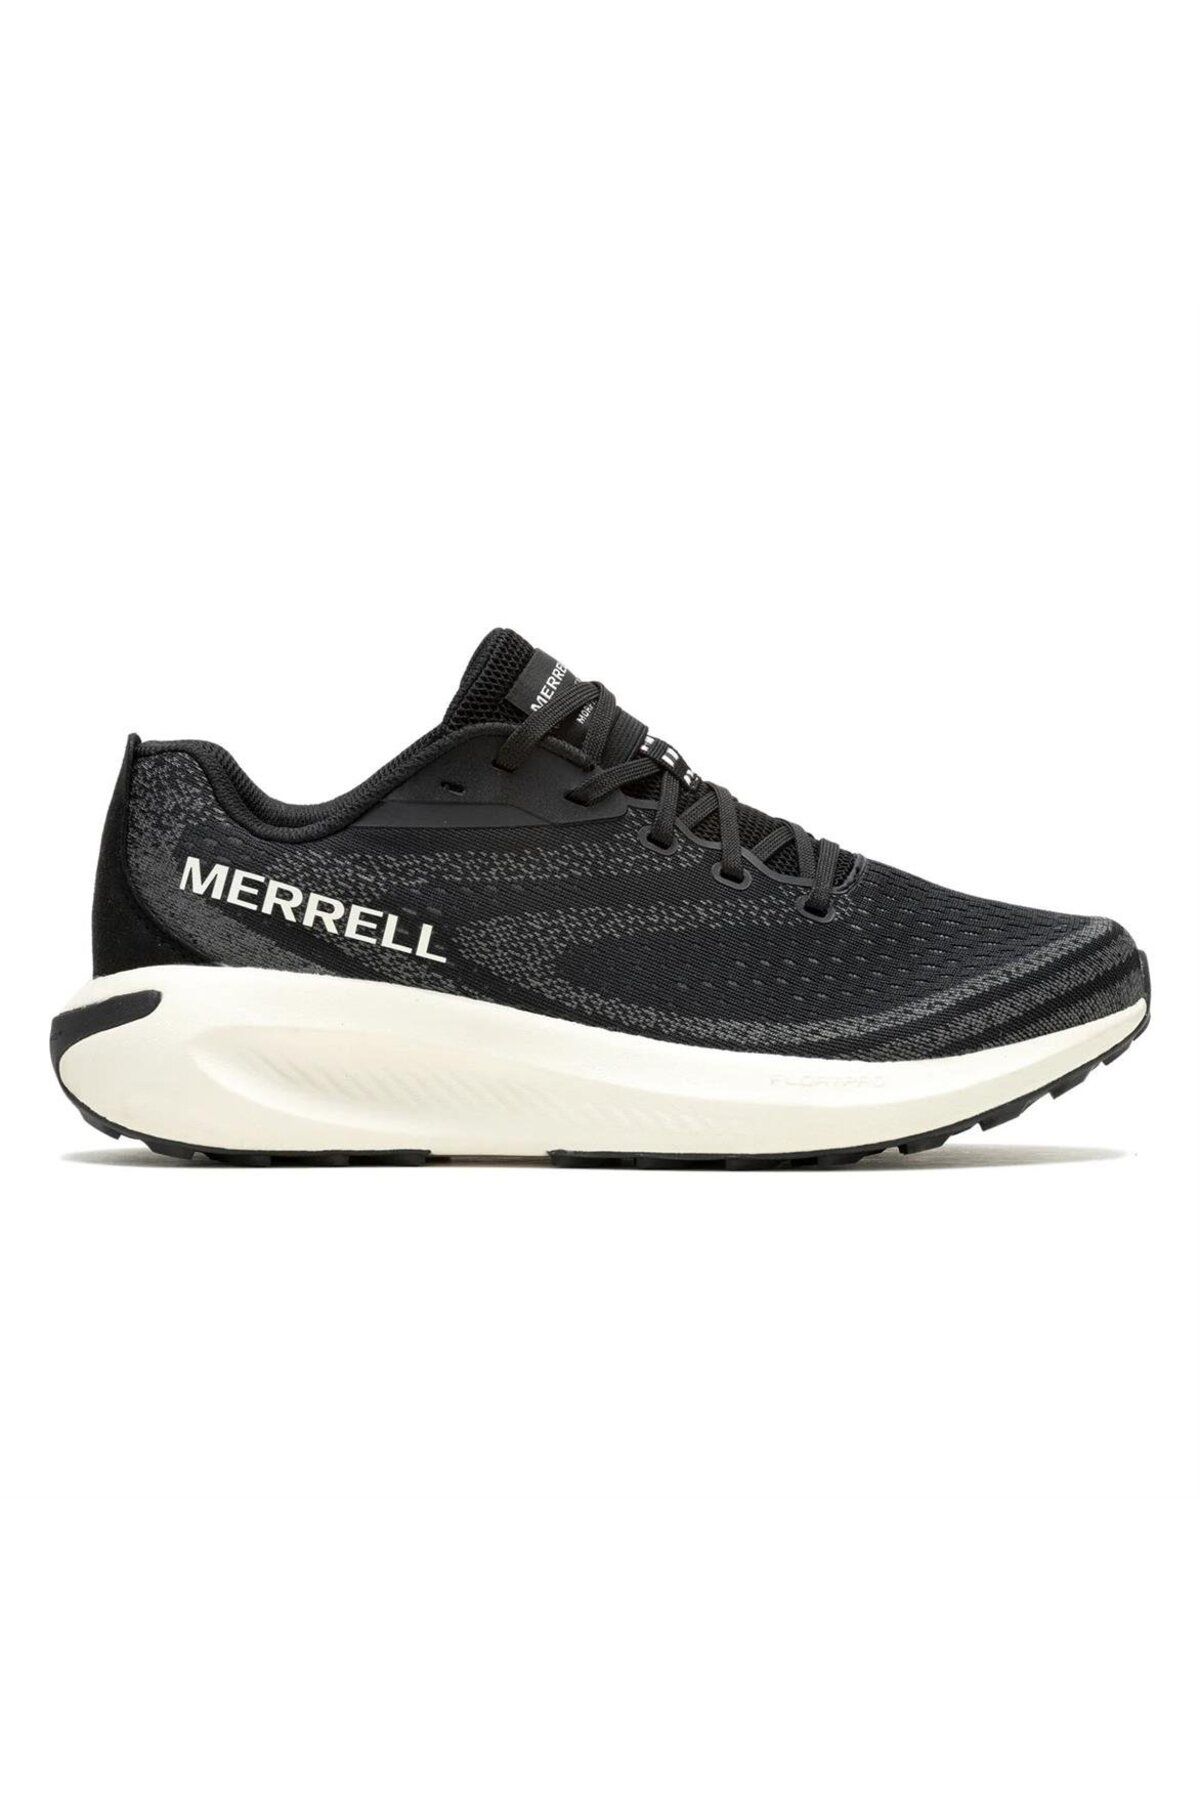 Merrell Morphlıte Siyah Kadın Patika Koşu Ayakkabısı